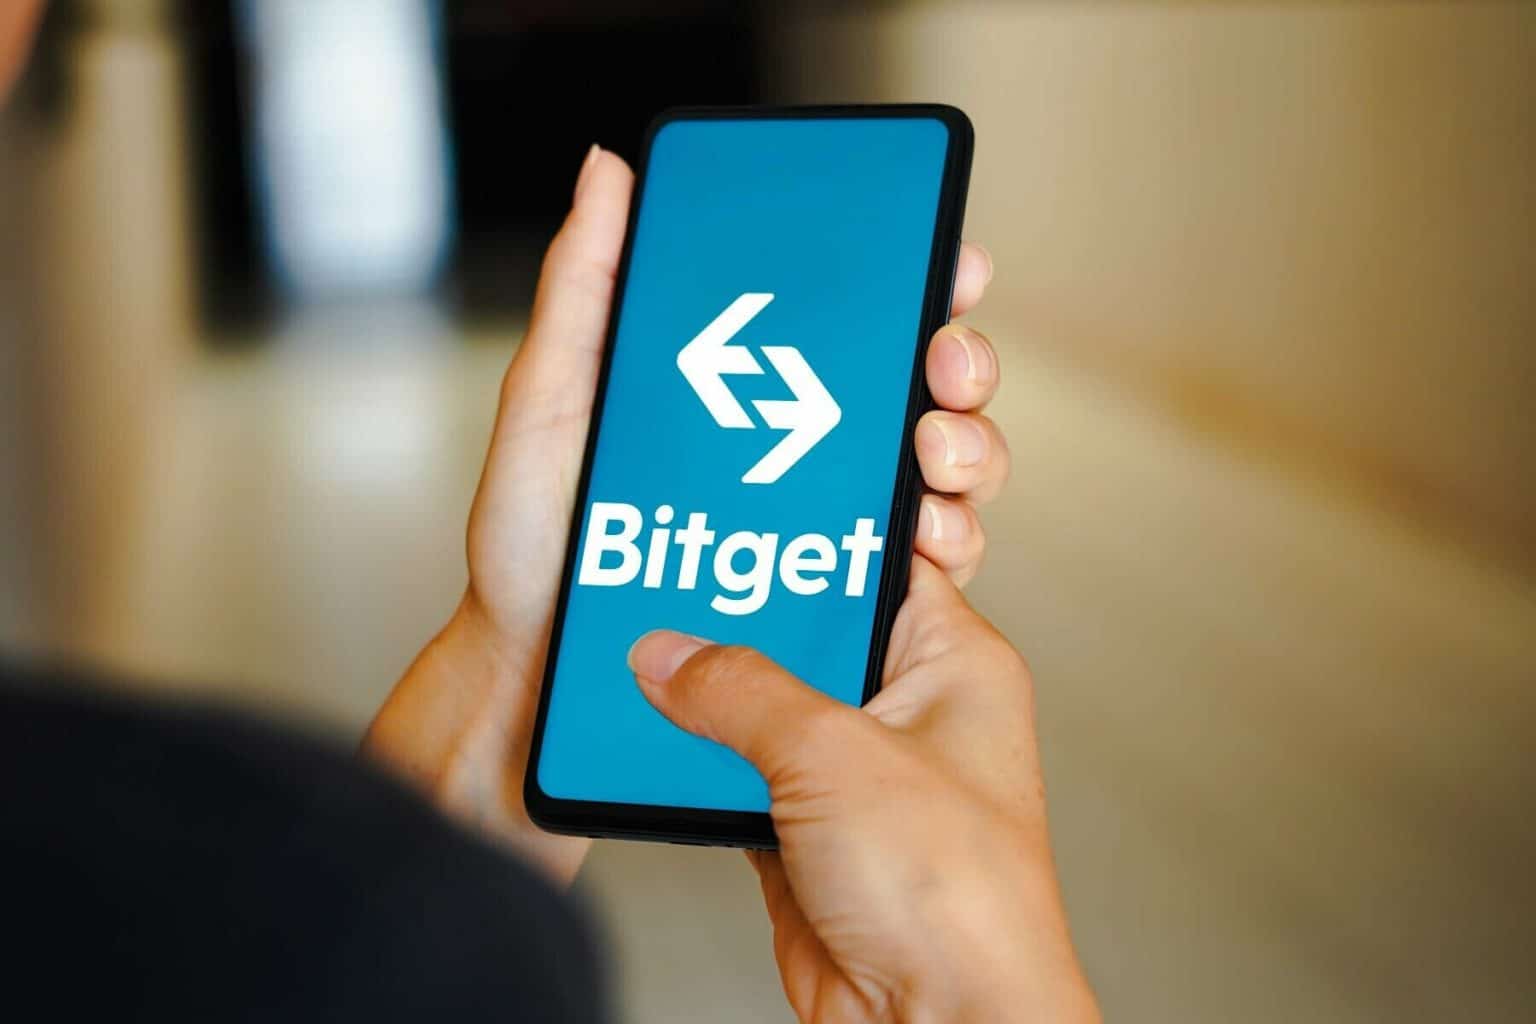 Bitget社、デジタル資産取引を再構築するポジショングリッドをリリース